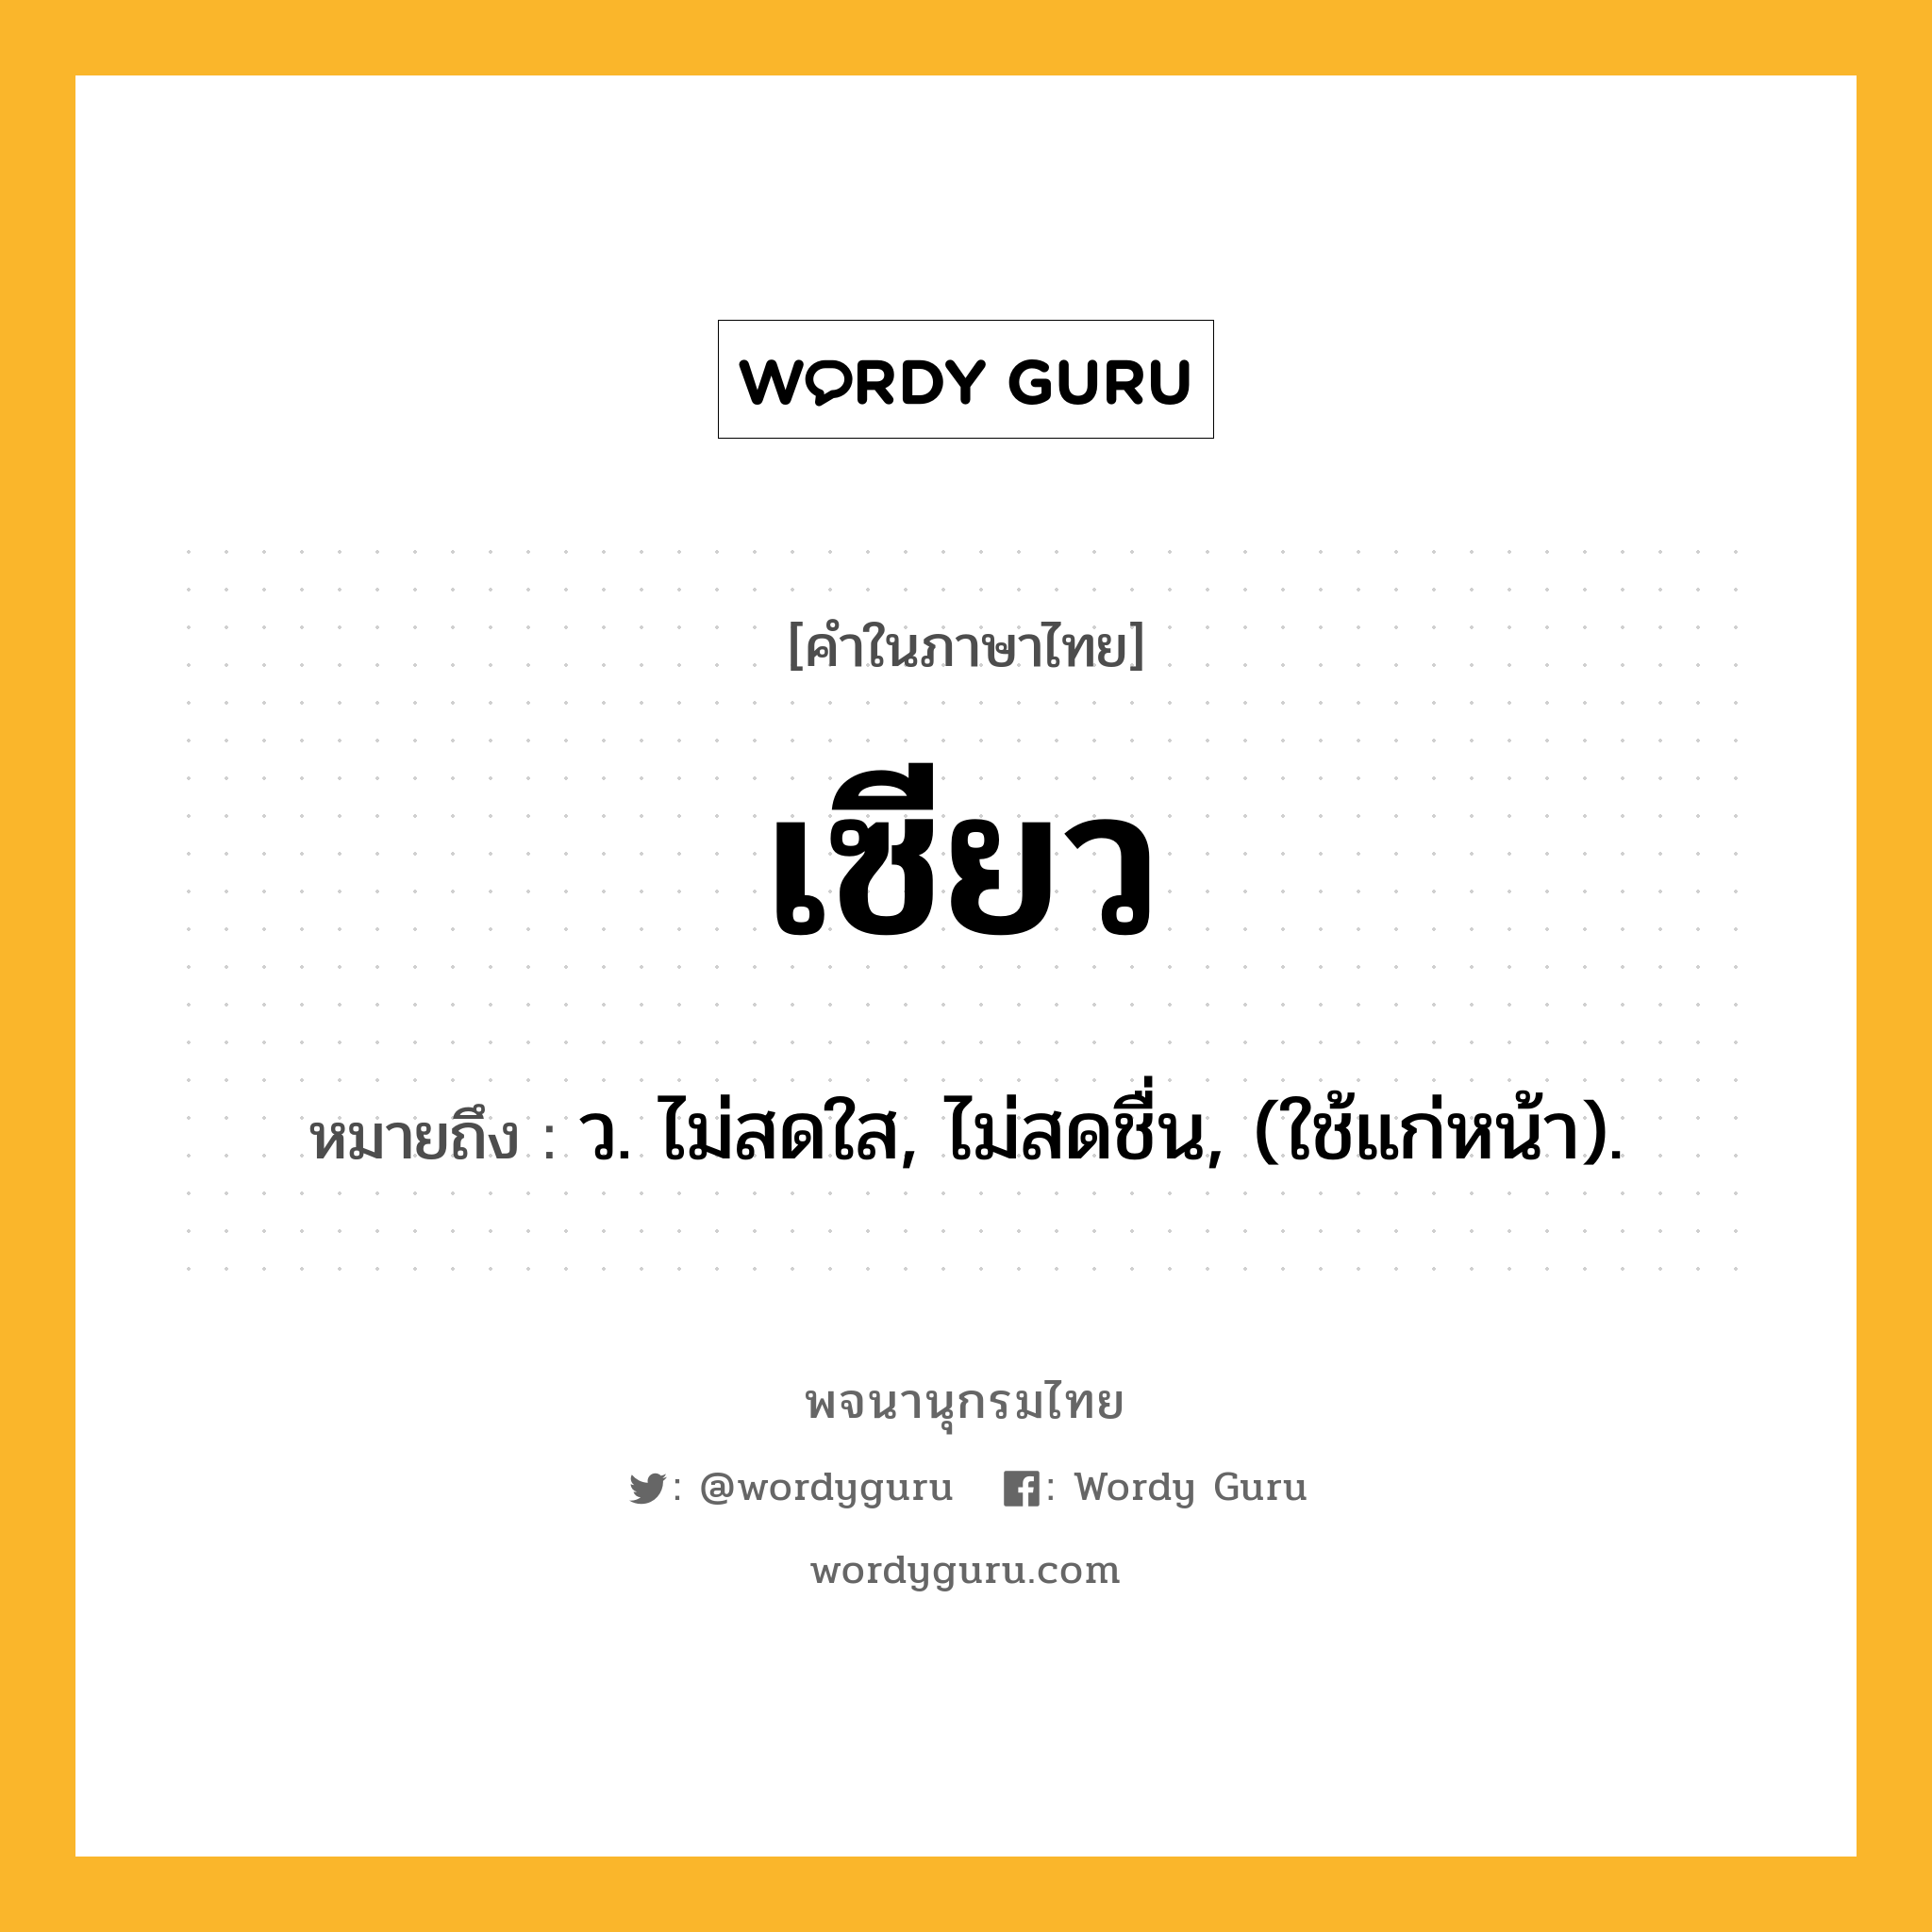 เซียว หมายถึงอะไร?, คำในภาษาไทย เซียว หมายถึง ว. ไม่สดใส, ไม่สดชื่น, (ใช้แก่หน้า).